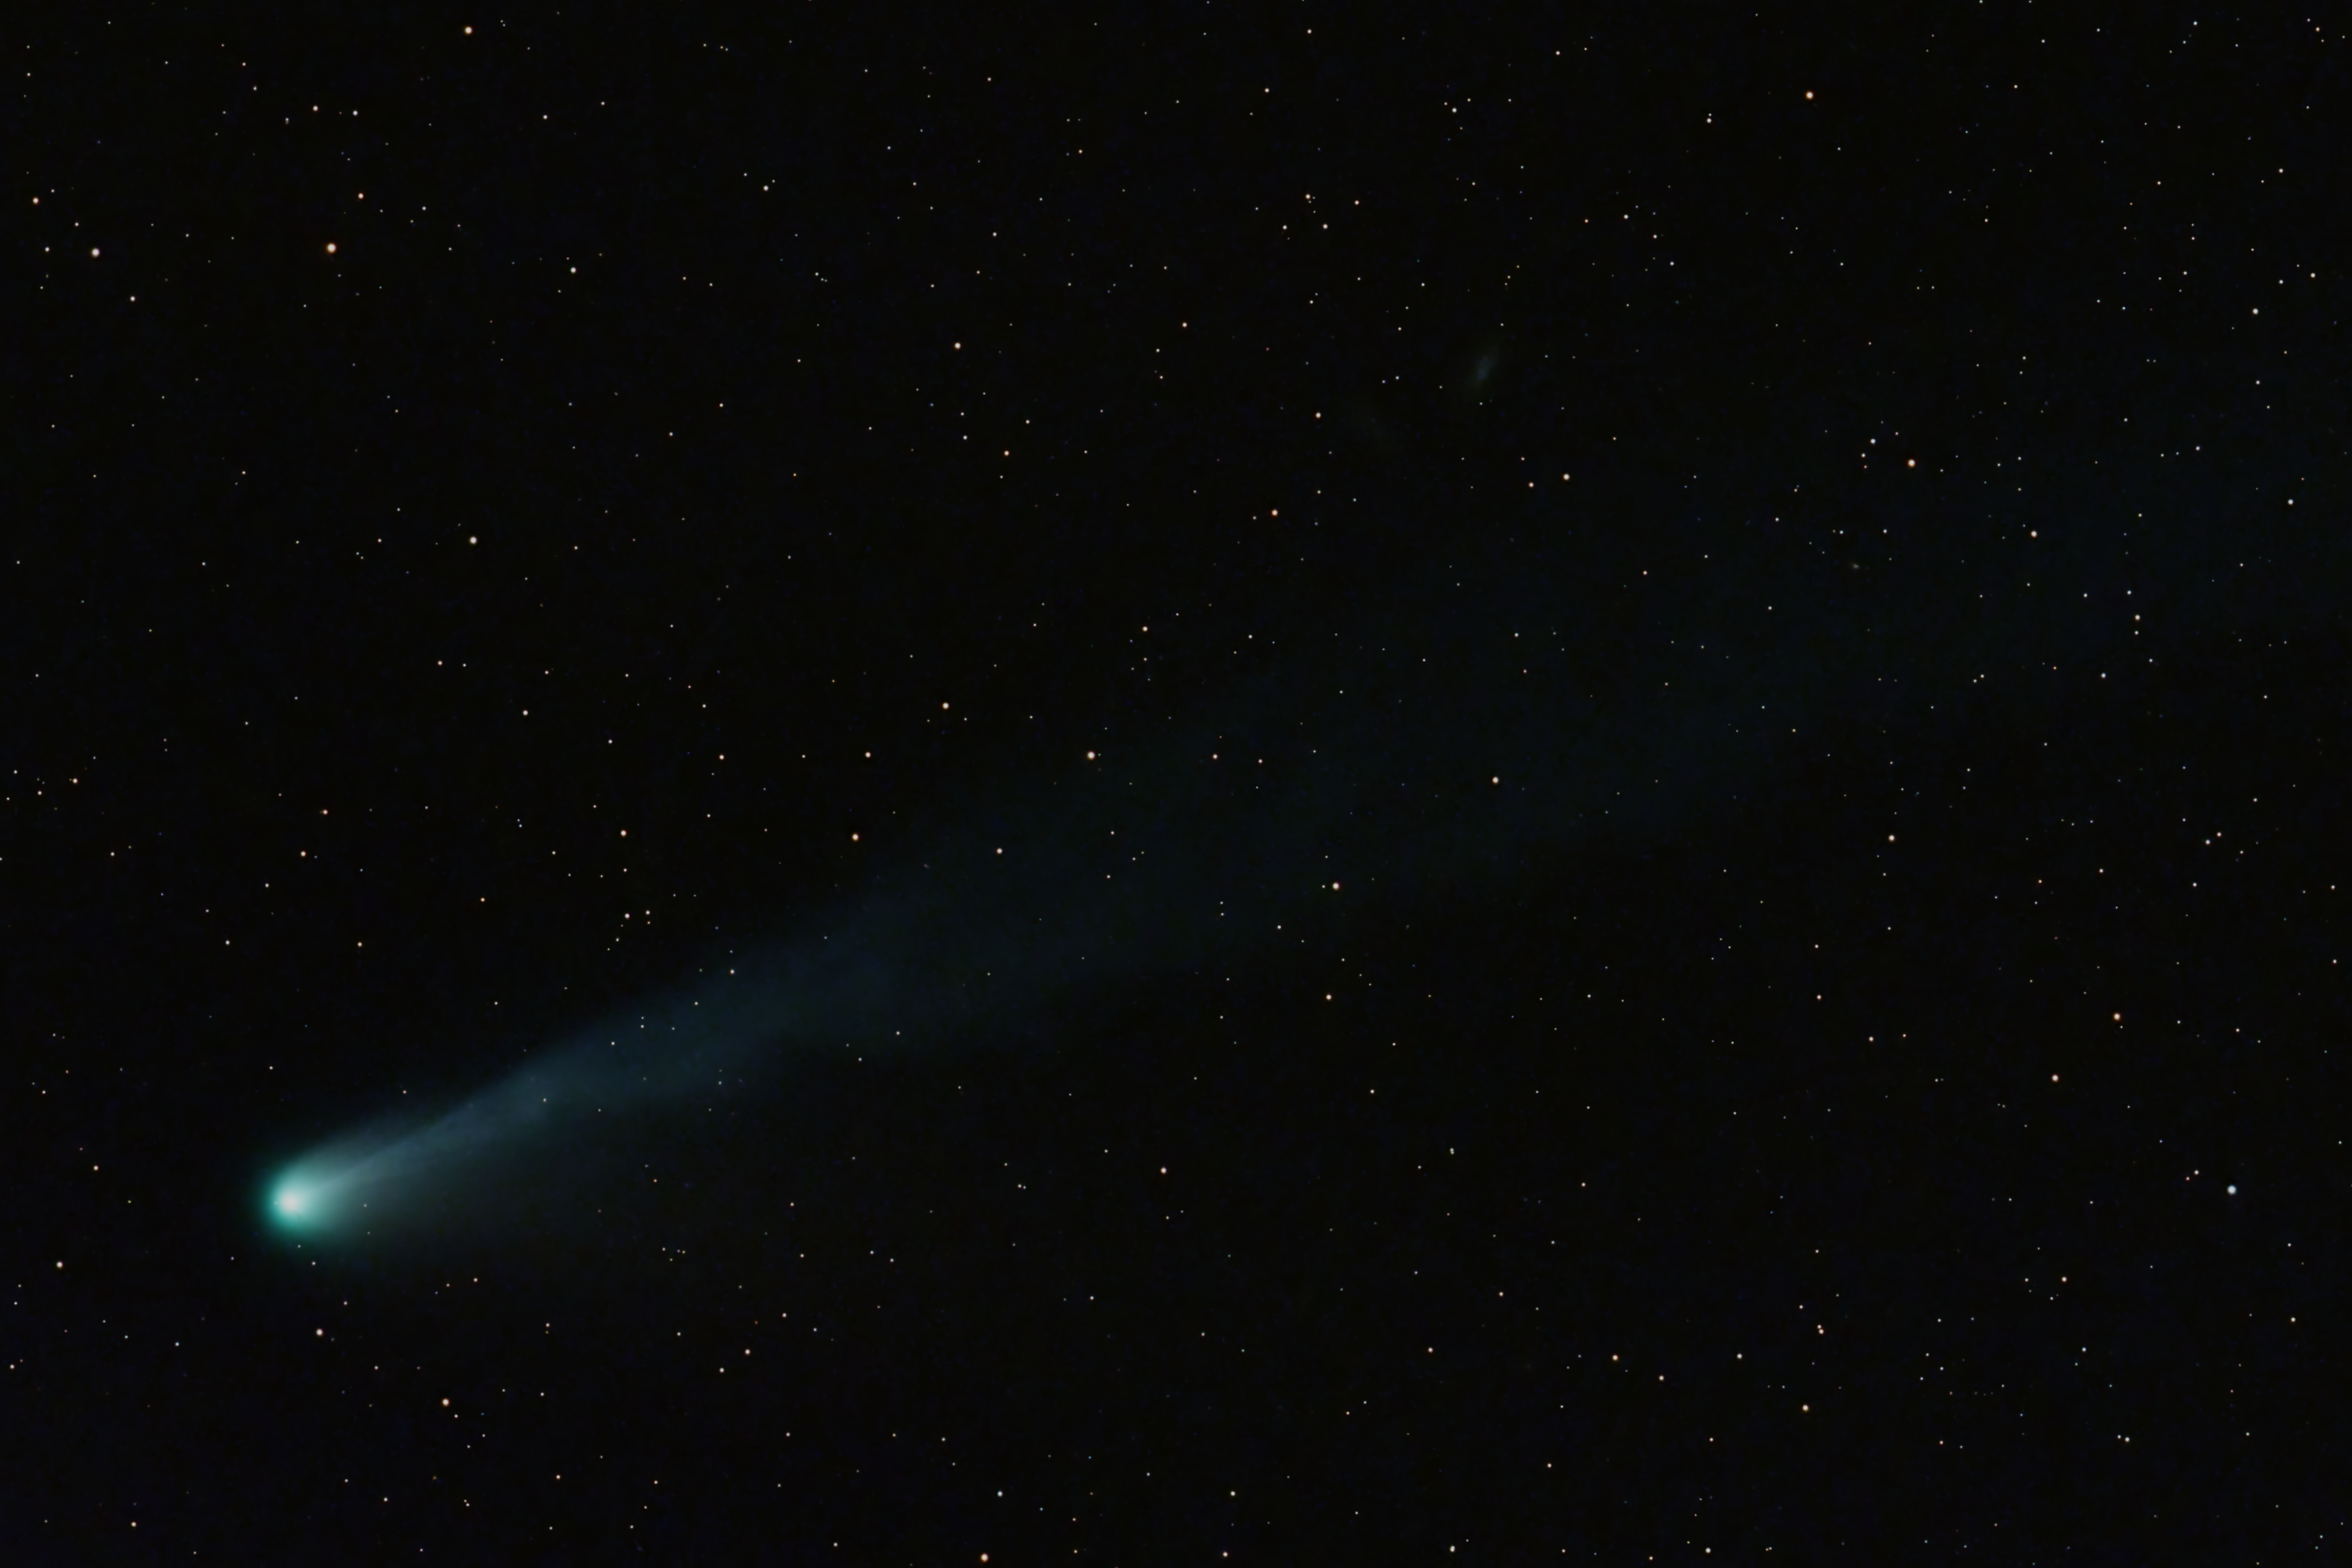 Comet 12P